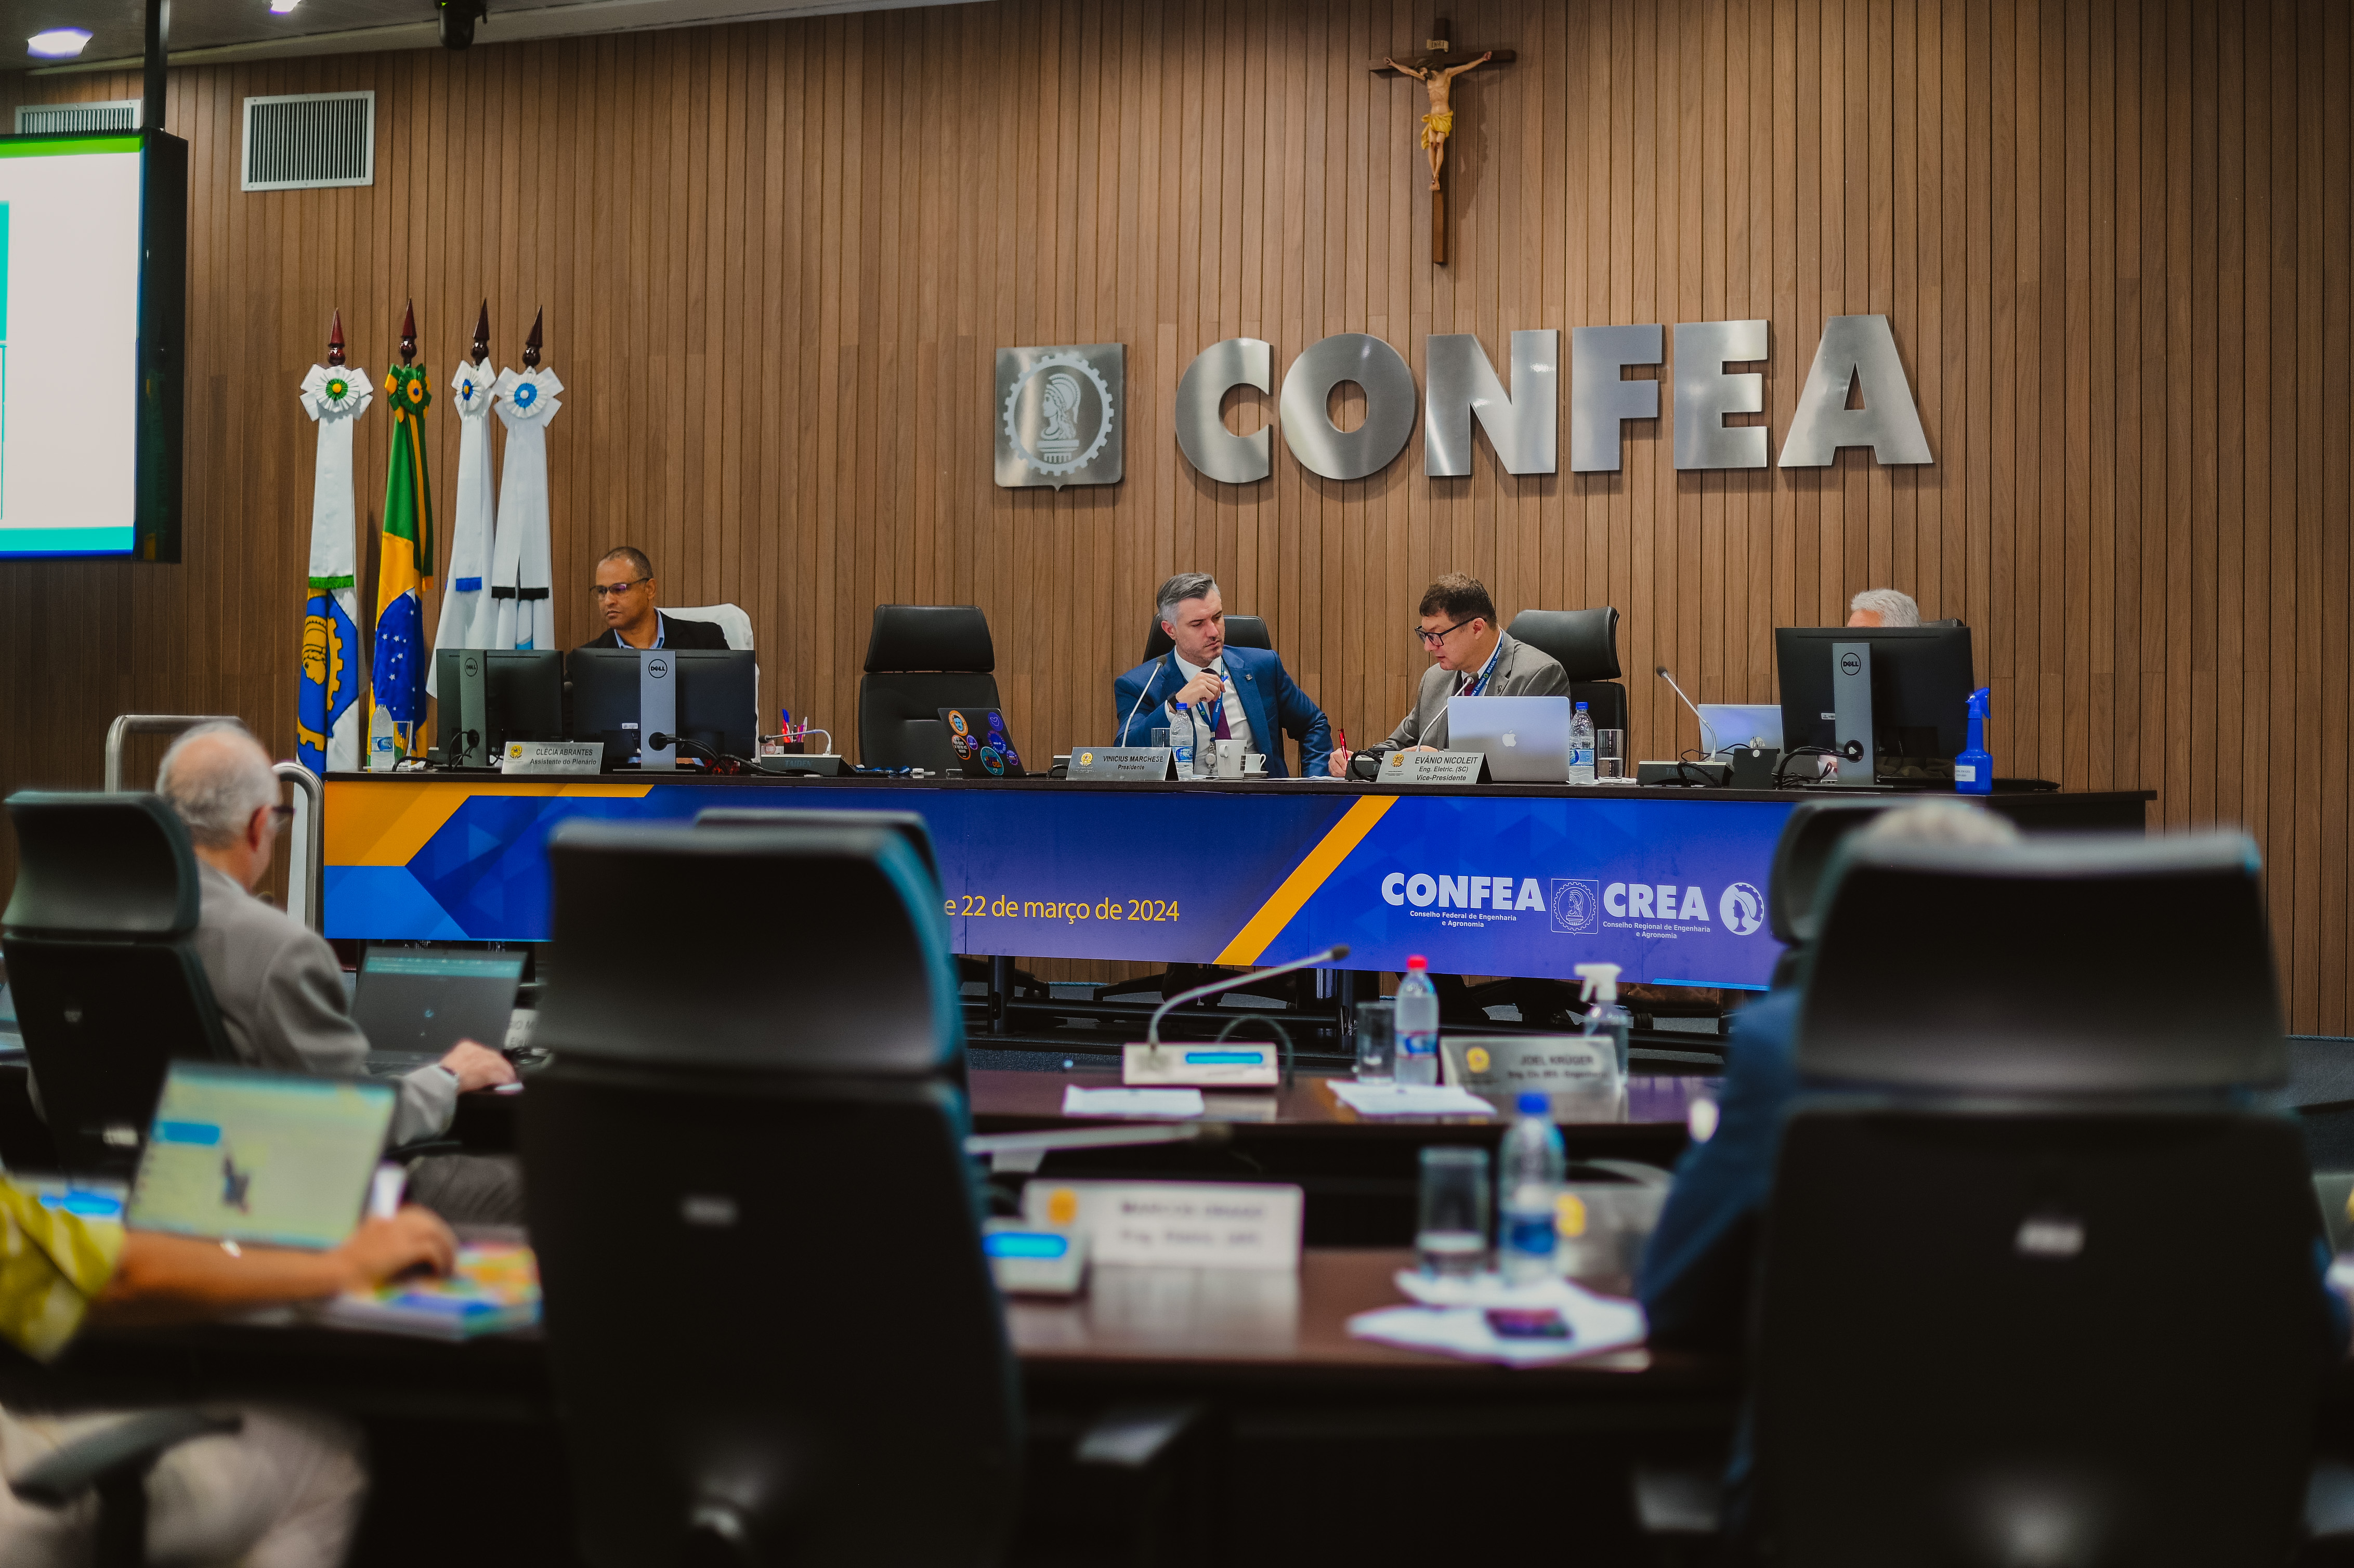 Plenária foi conduzida pelo presidente Vinicius Marchese e pelo vice-presidente do Confea, eng. Evânio Nicoleit